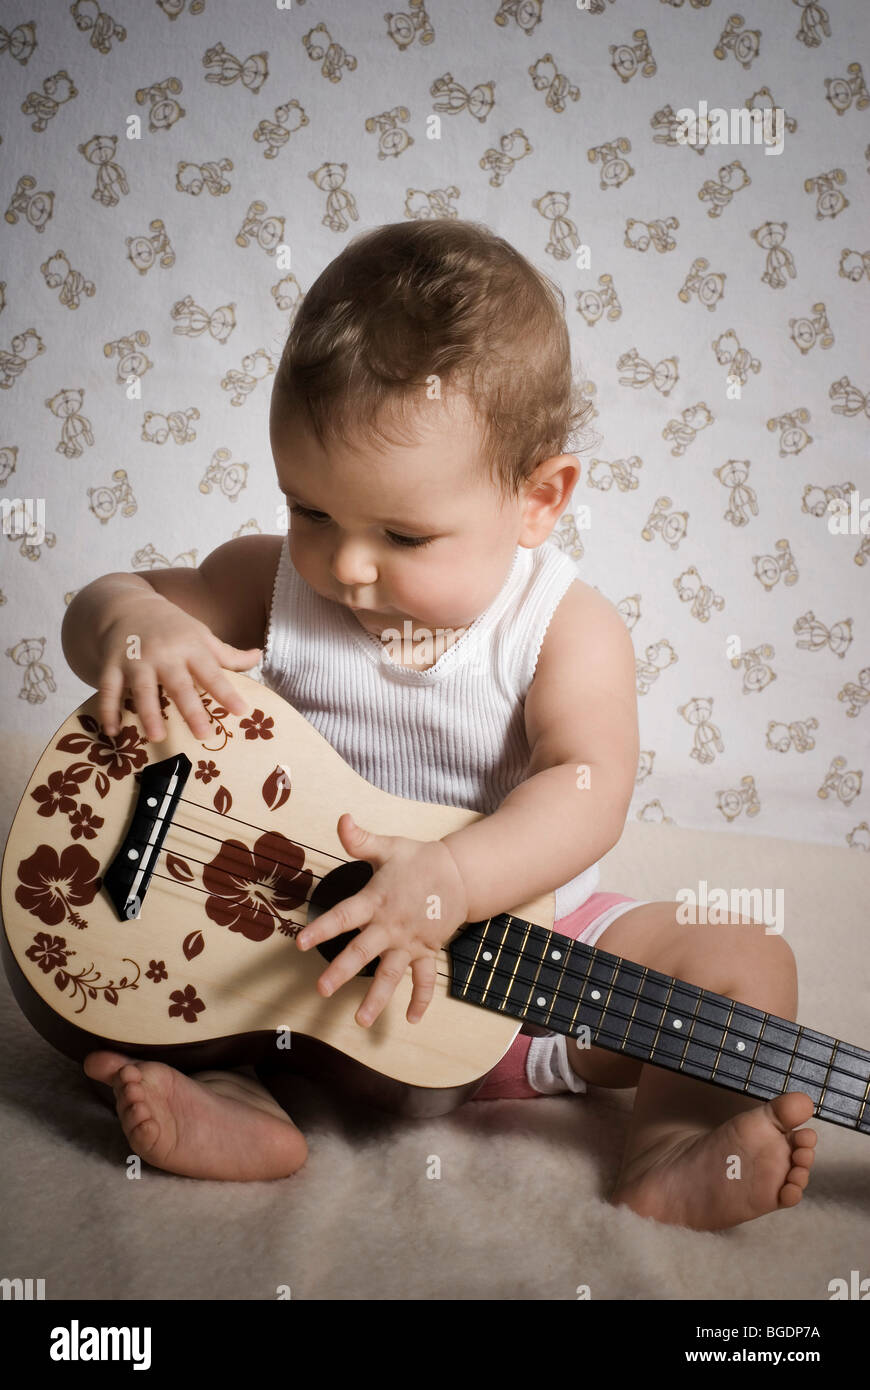 Avondeten erwt Wanten Baby with guitar Stock Photo - Alamy